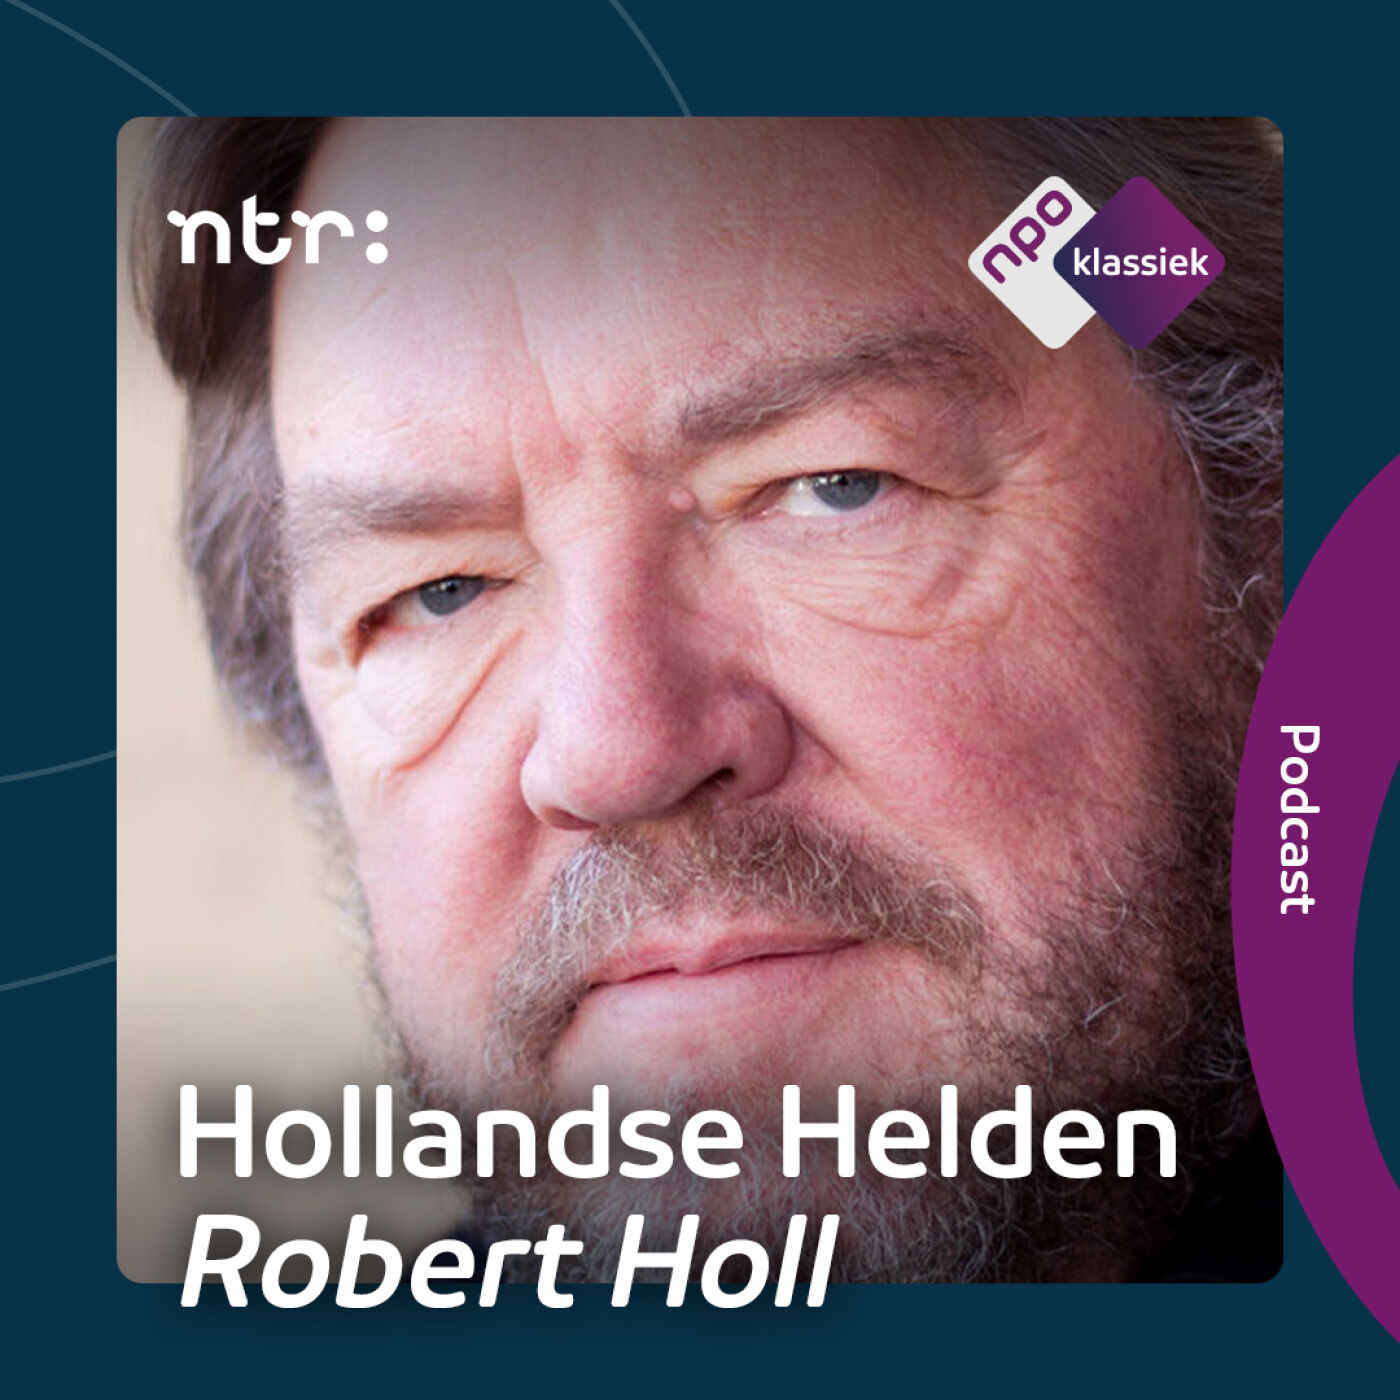 Trailer - Luister vanaf 27 december naar Hollandse Helden